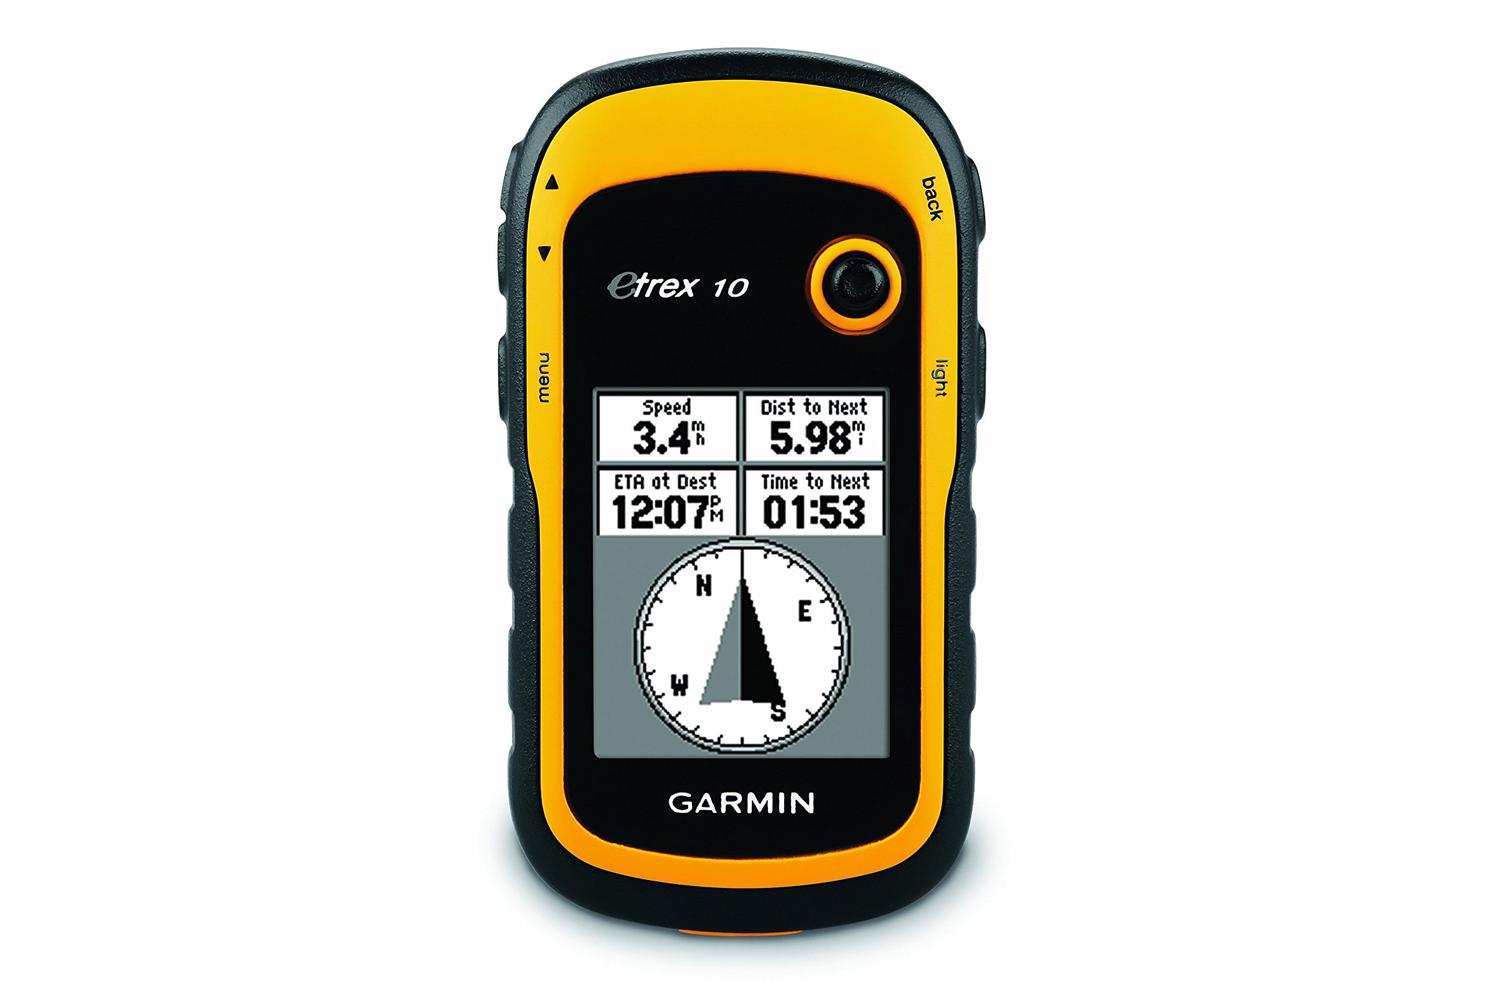 Garmin eTrex 10 handheld GPS